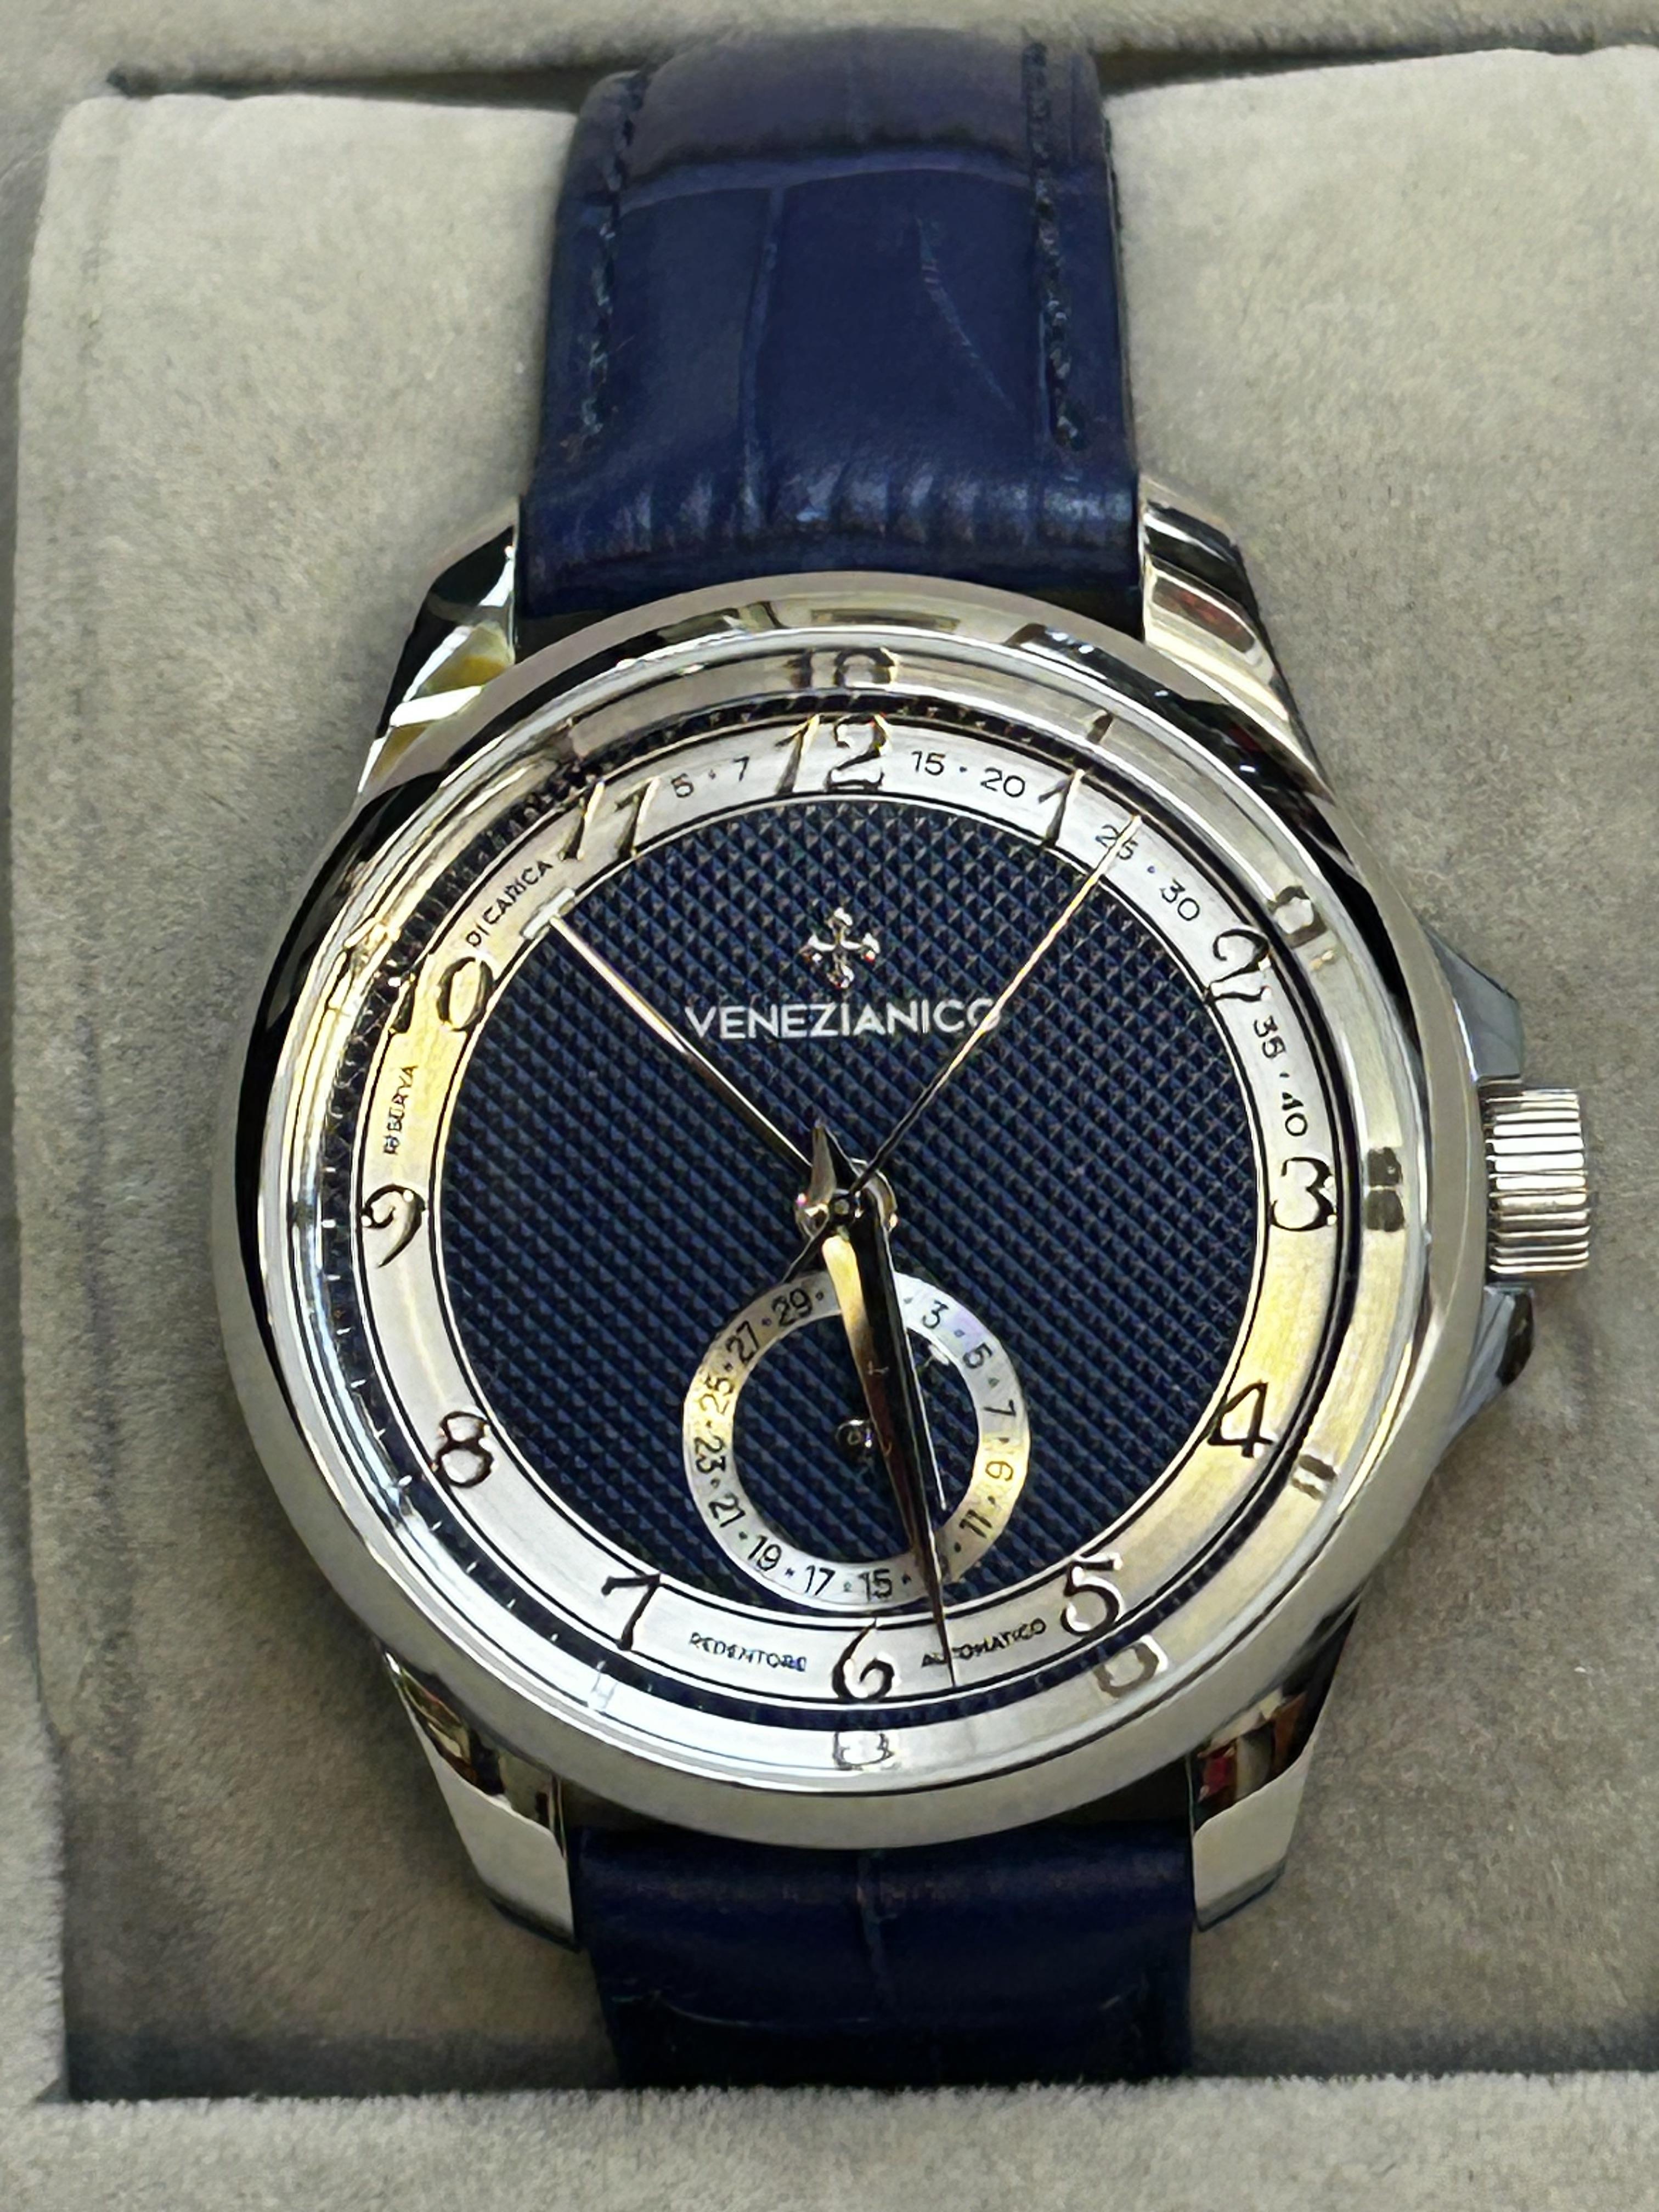 Limited edition Venezianico wristwatch 11/100 purc